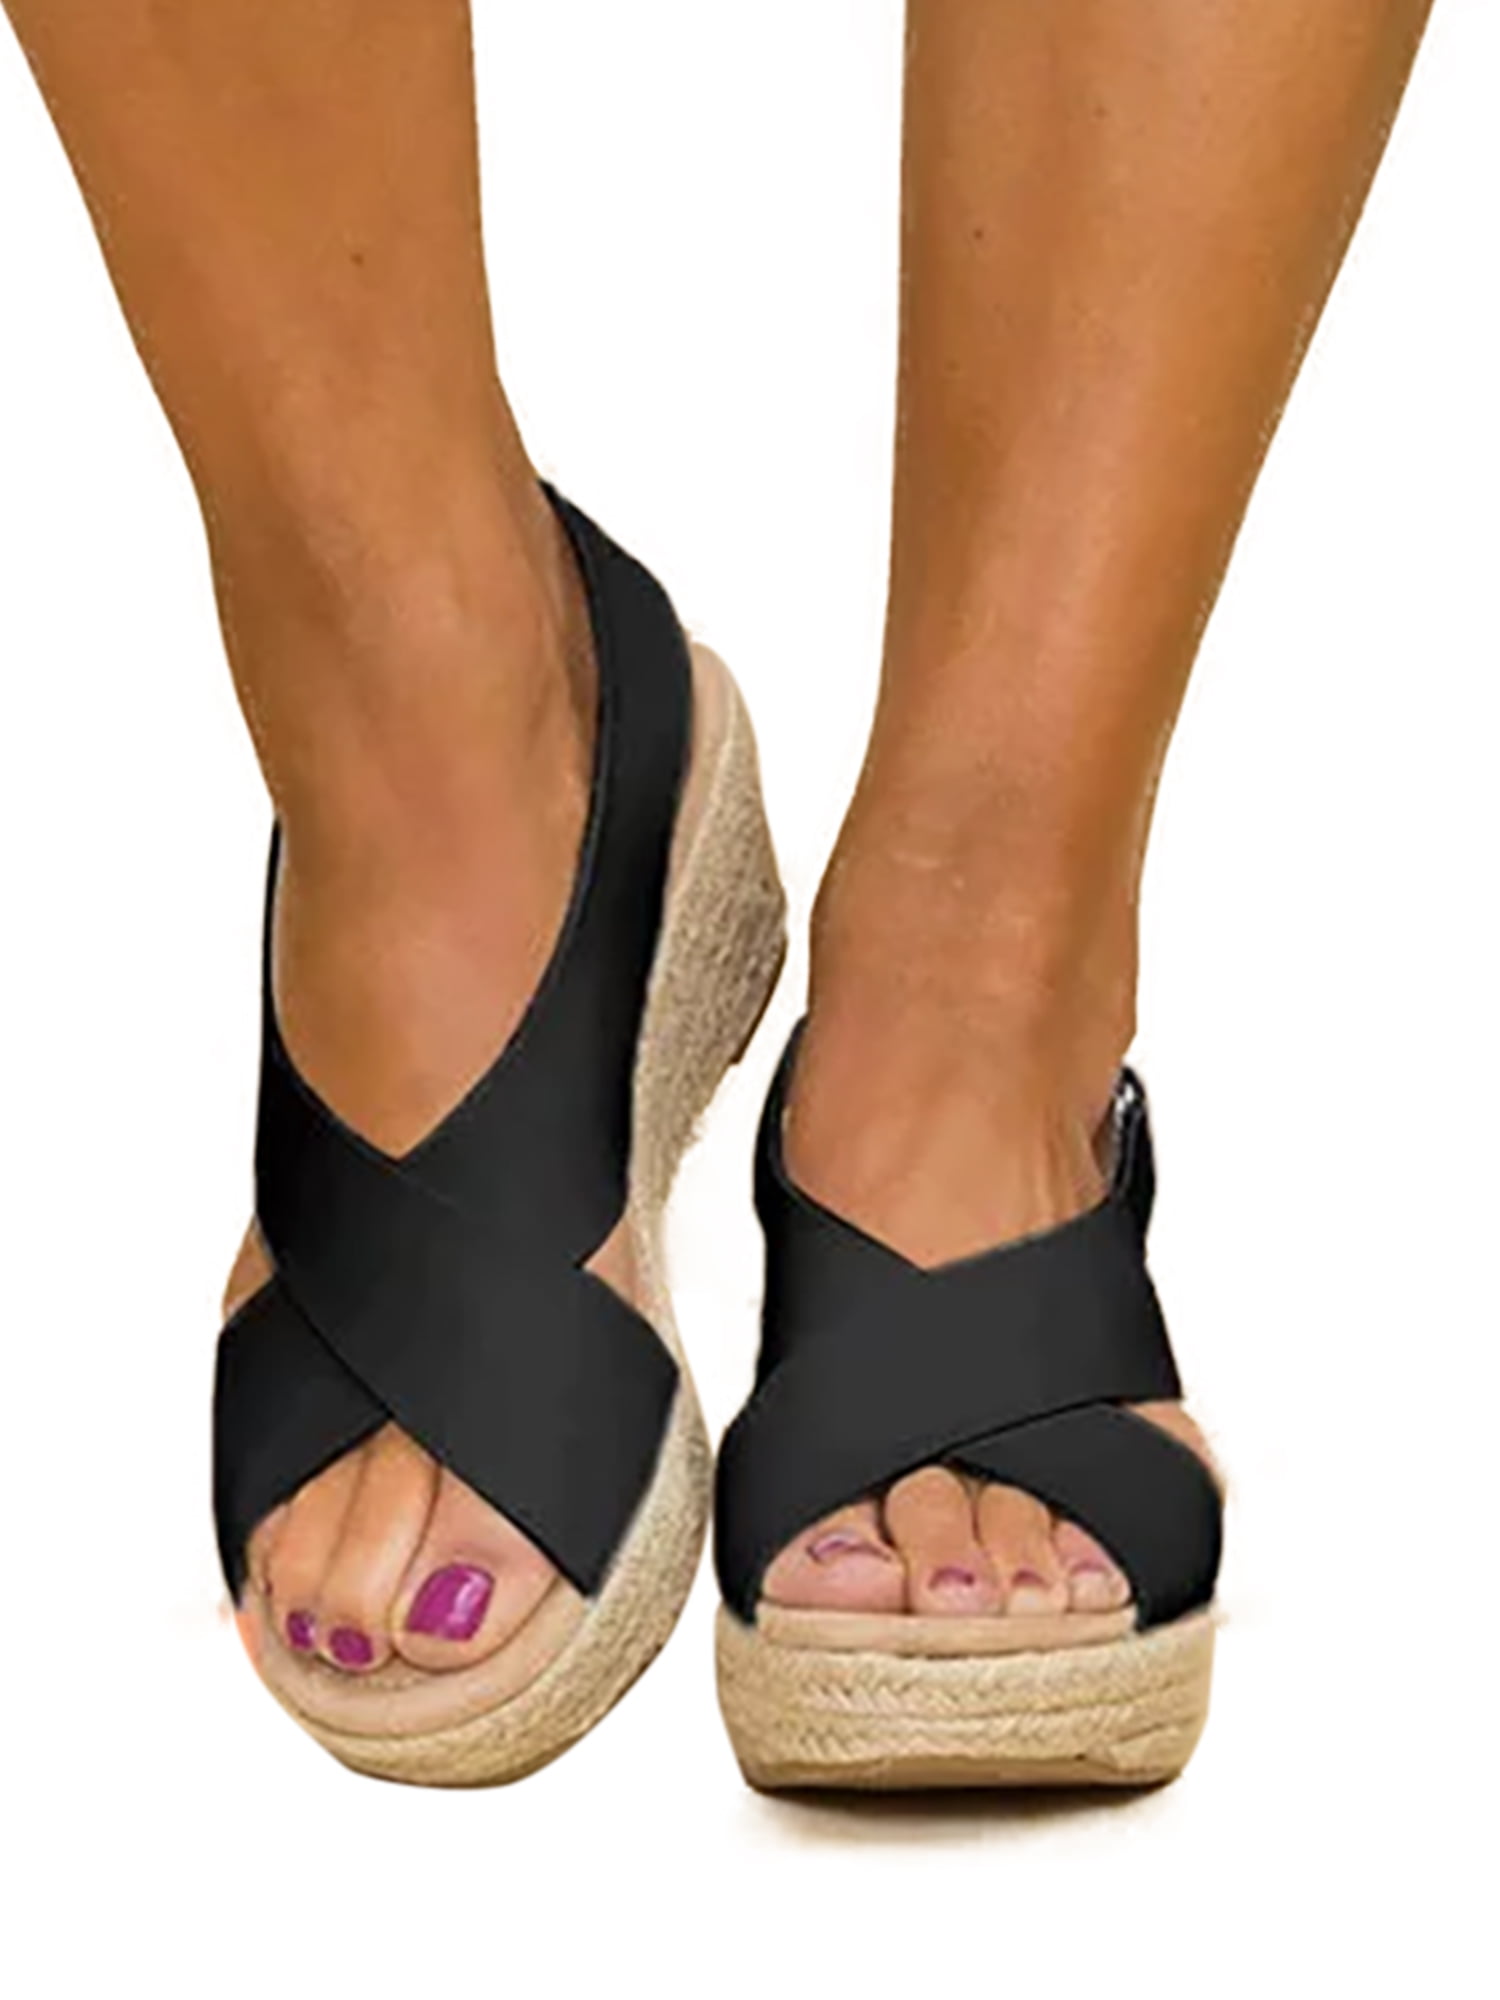 Women's Sandals Wedge Mid Heels Platform Ladies Open Toe Buckle Summer Shoes 